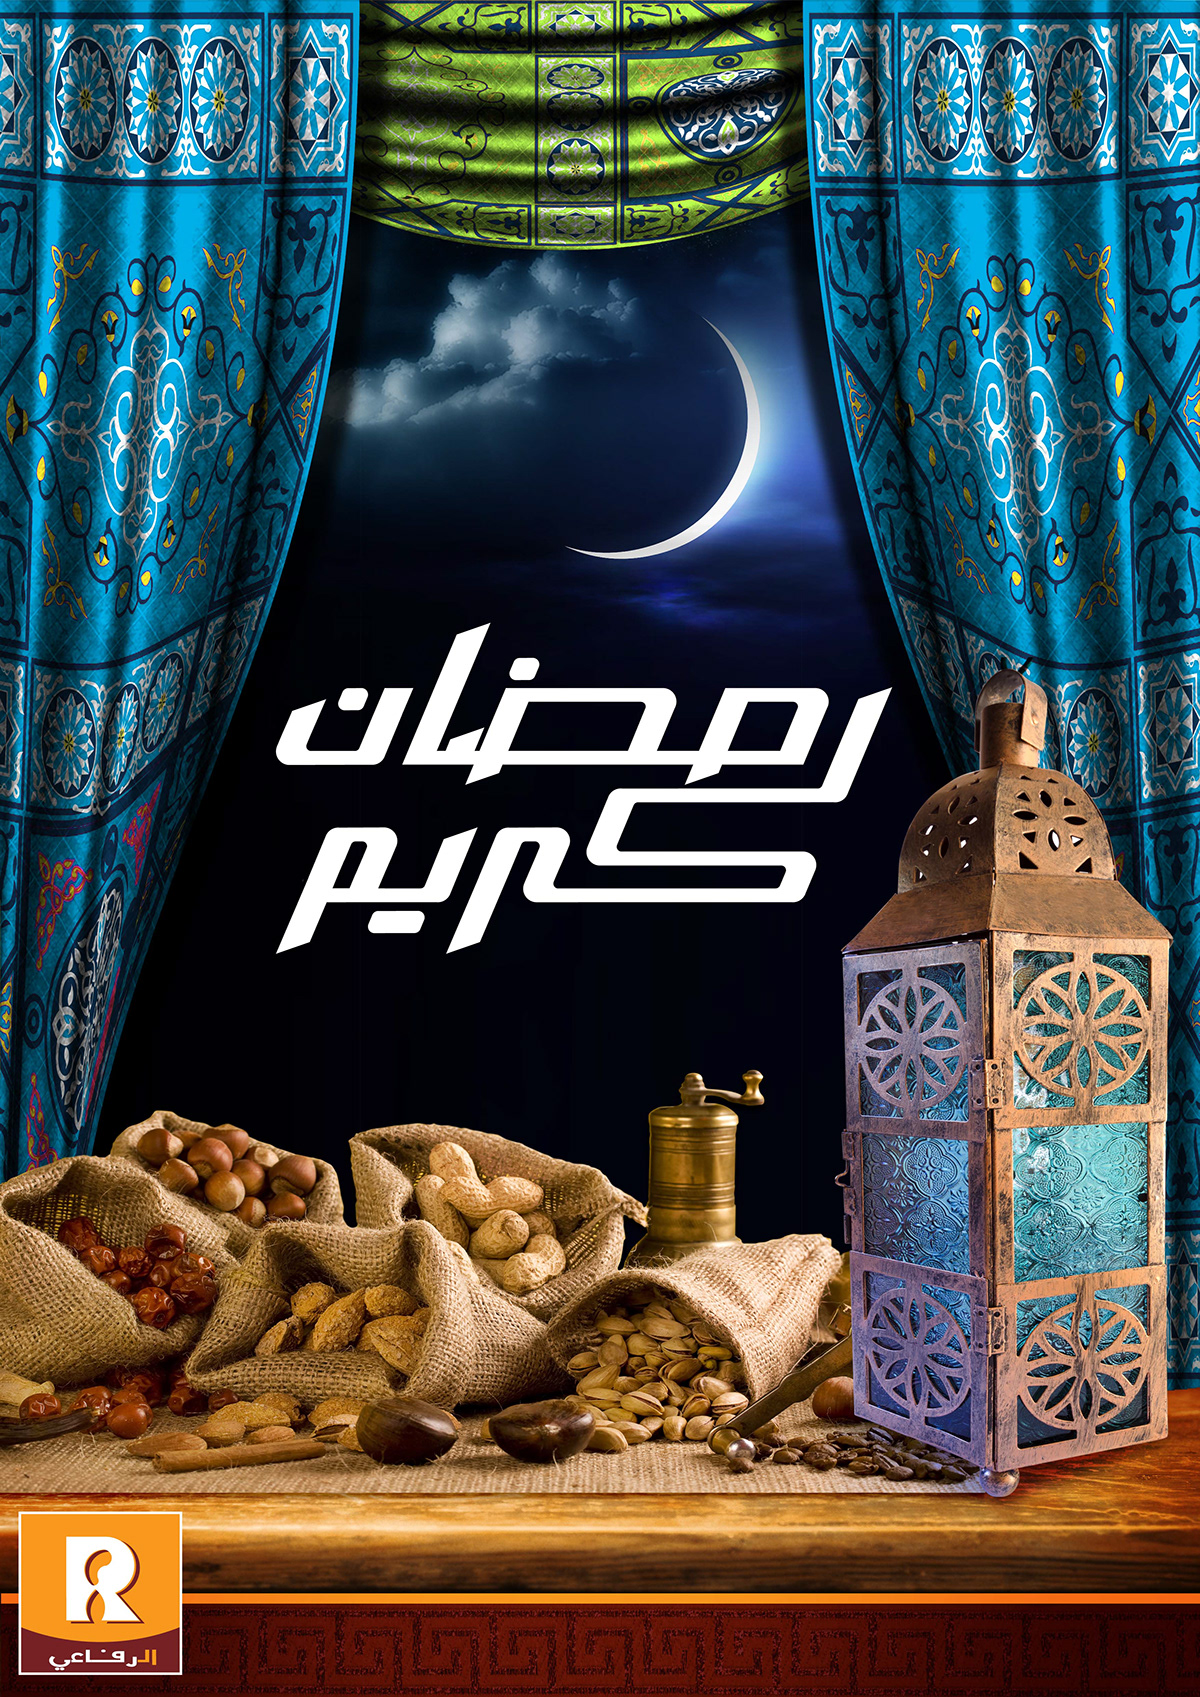 Al-rifai dangler ramadan